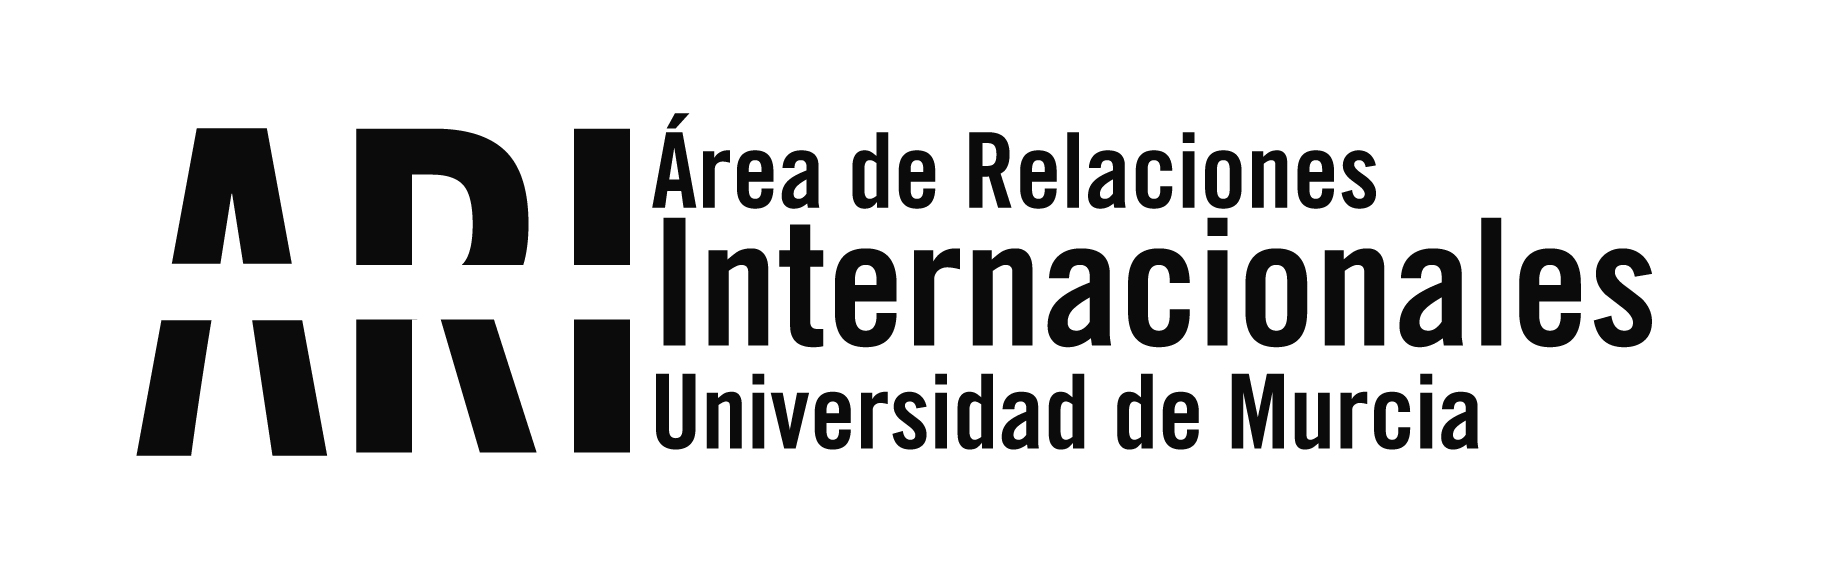 Una delegación de la Universidade Estatual do Norte do Paraná (Brasil) visita la UMU - Área de Relaciones Internacionales